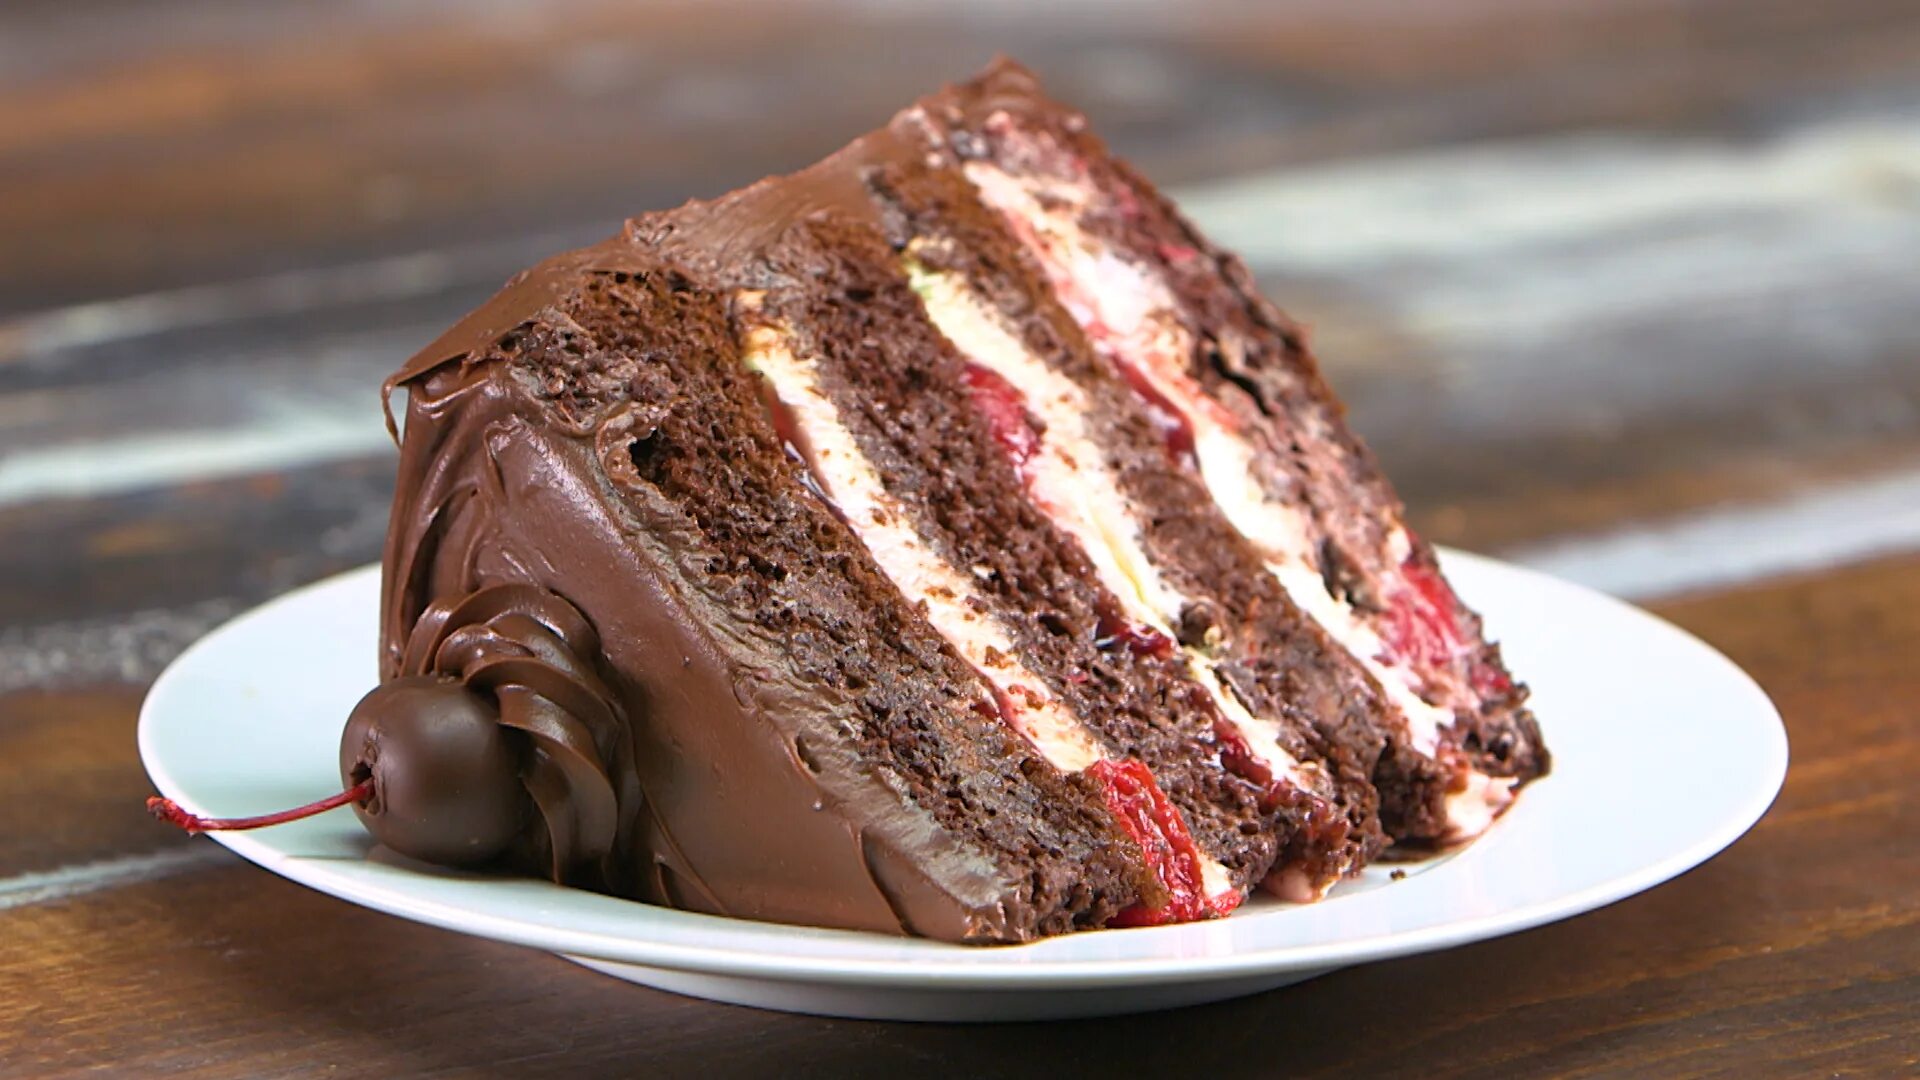 This is my cake. Блэк Форест торт. Шоколадный торт с клубничным конфи. Торт с вишней. Торт "шоколадный с вишней".